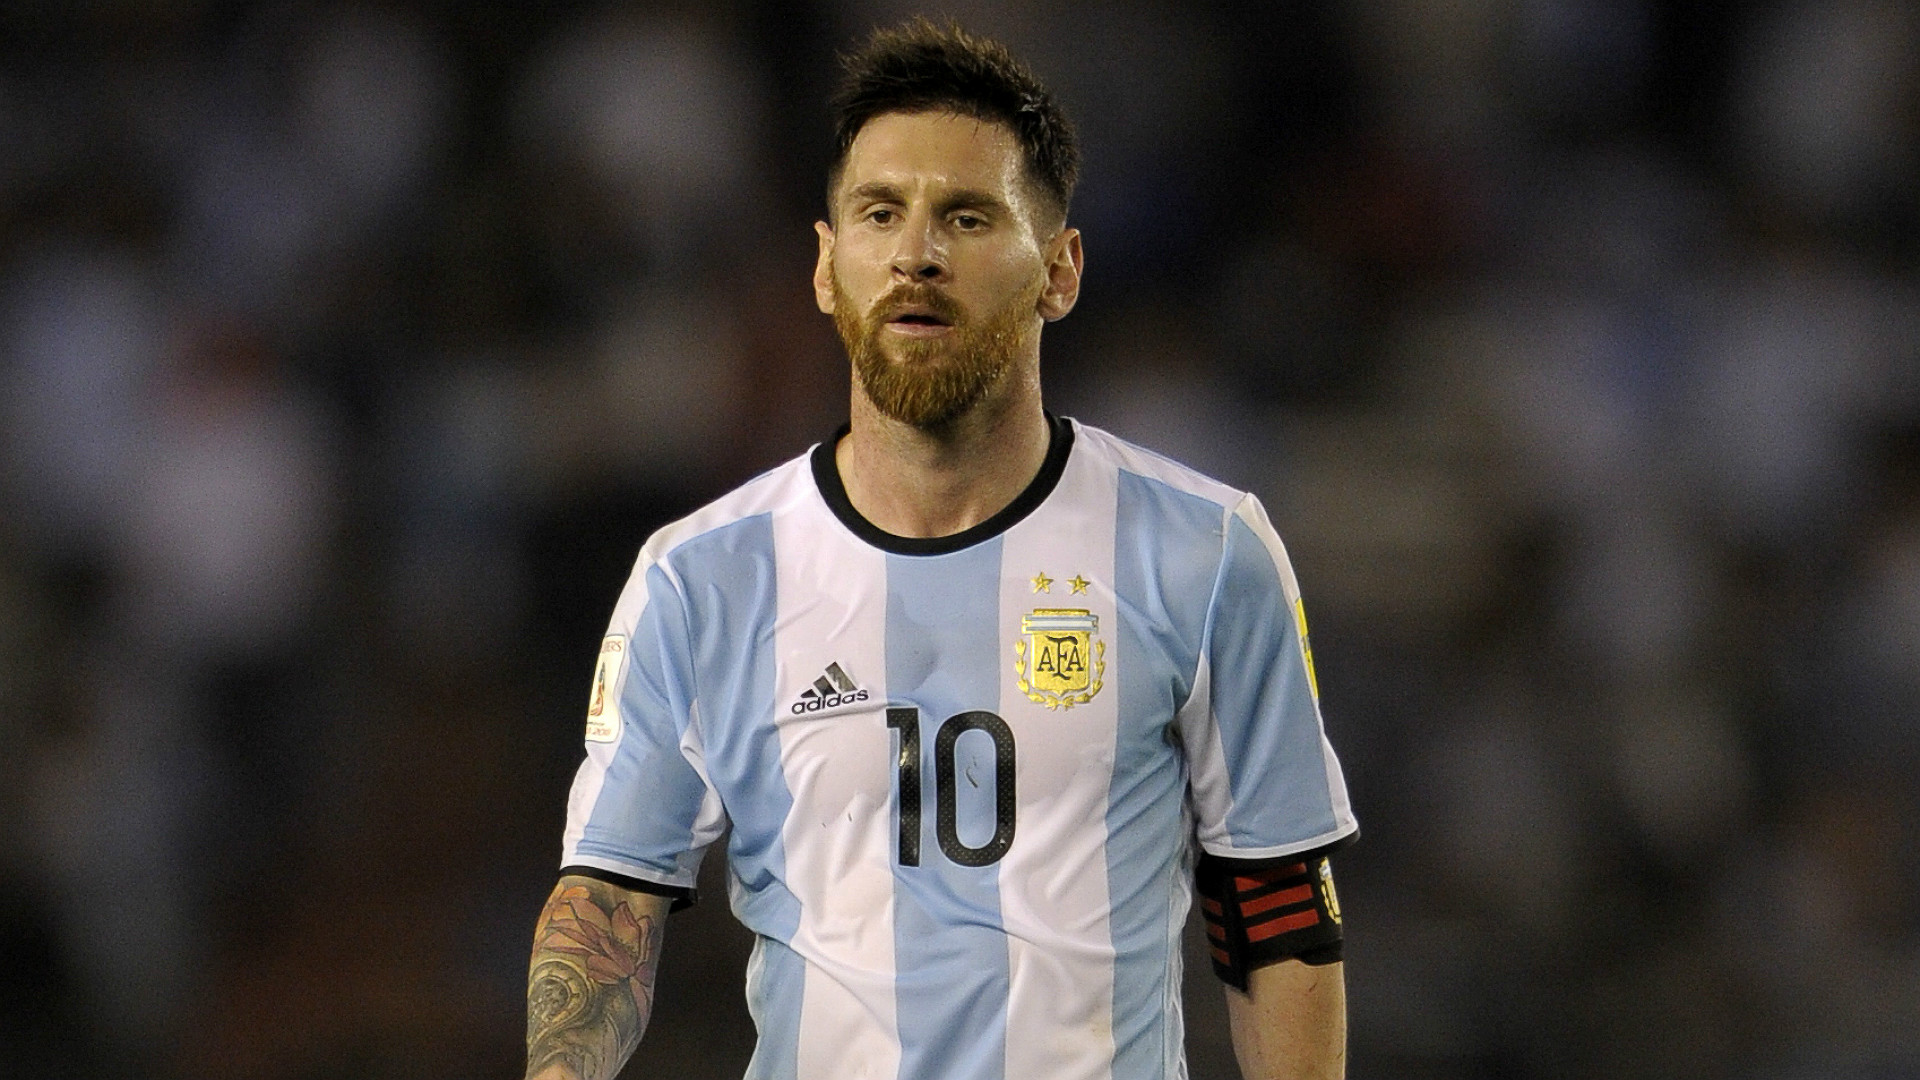 Thống kê Messi World Cup: Bạn là fan của Messi và muốn biết thêm nhiều thông tin về thành tích của anh tại World Cup? Hãy xem ngay thống kê Messi World Cup này, để điều tra về sự nghiệp đáng kinh ngạc của Messi trong những giải đấu lớn.